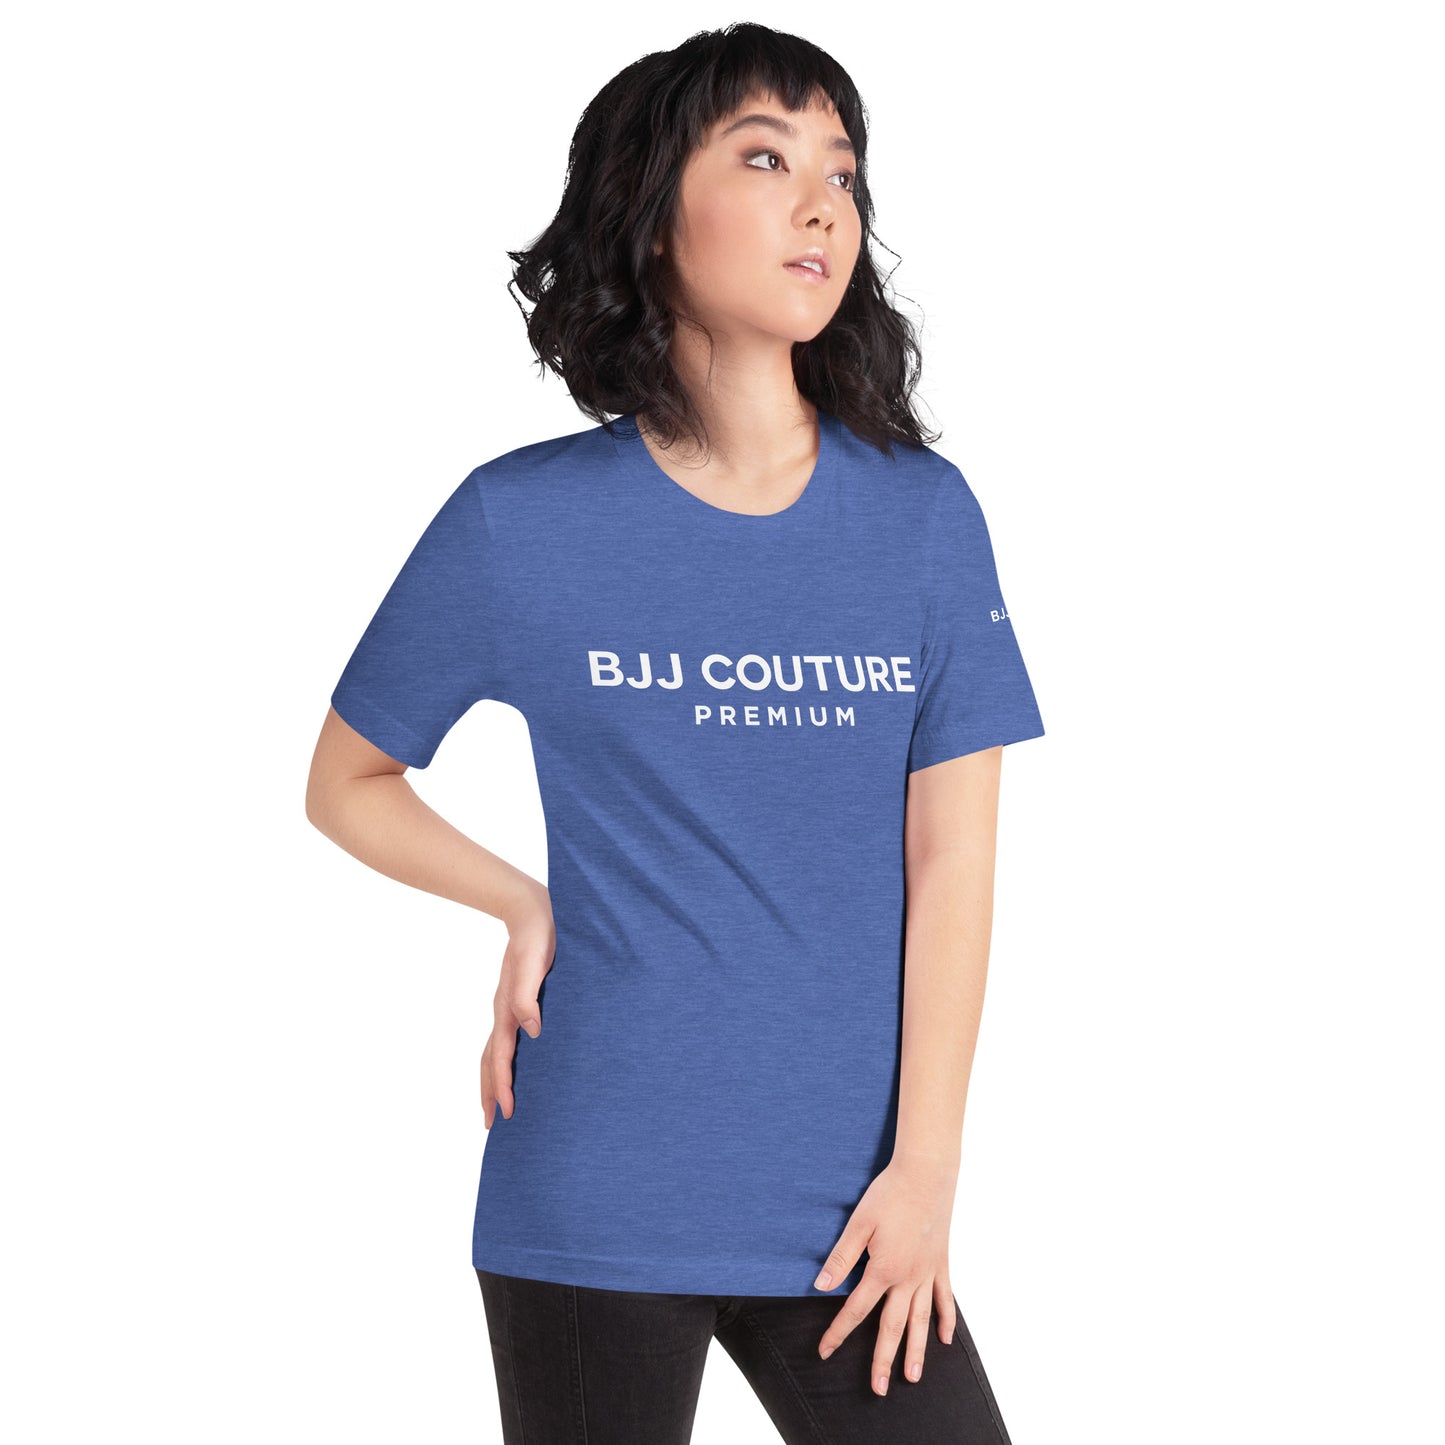 BJJ Couture Premium ultra-soft unisex t-shirt